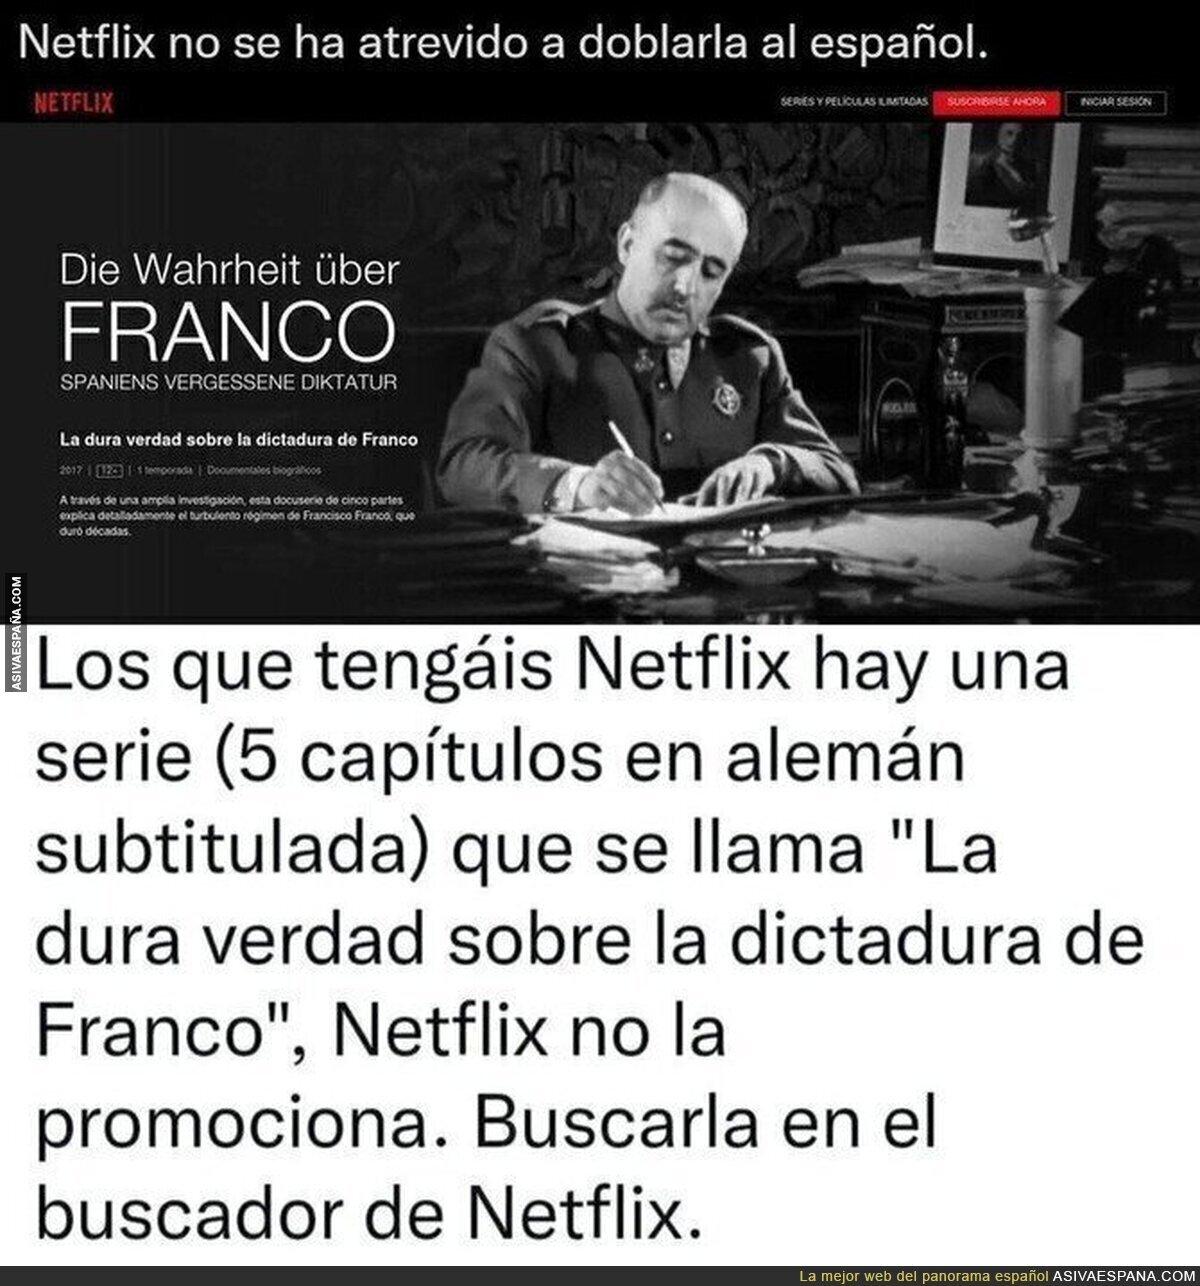 El documental de Netflix que no se han atrevido a doblar en español